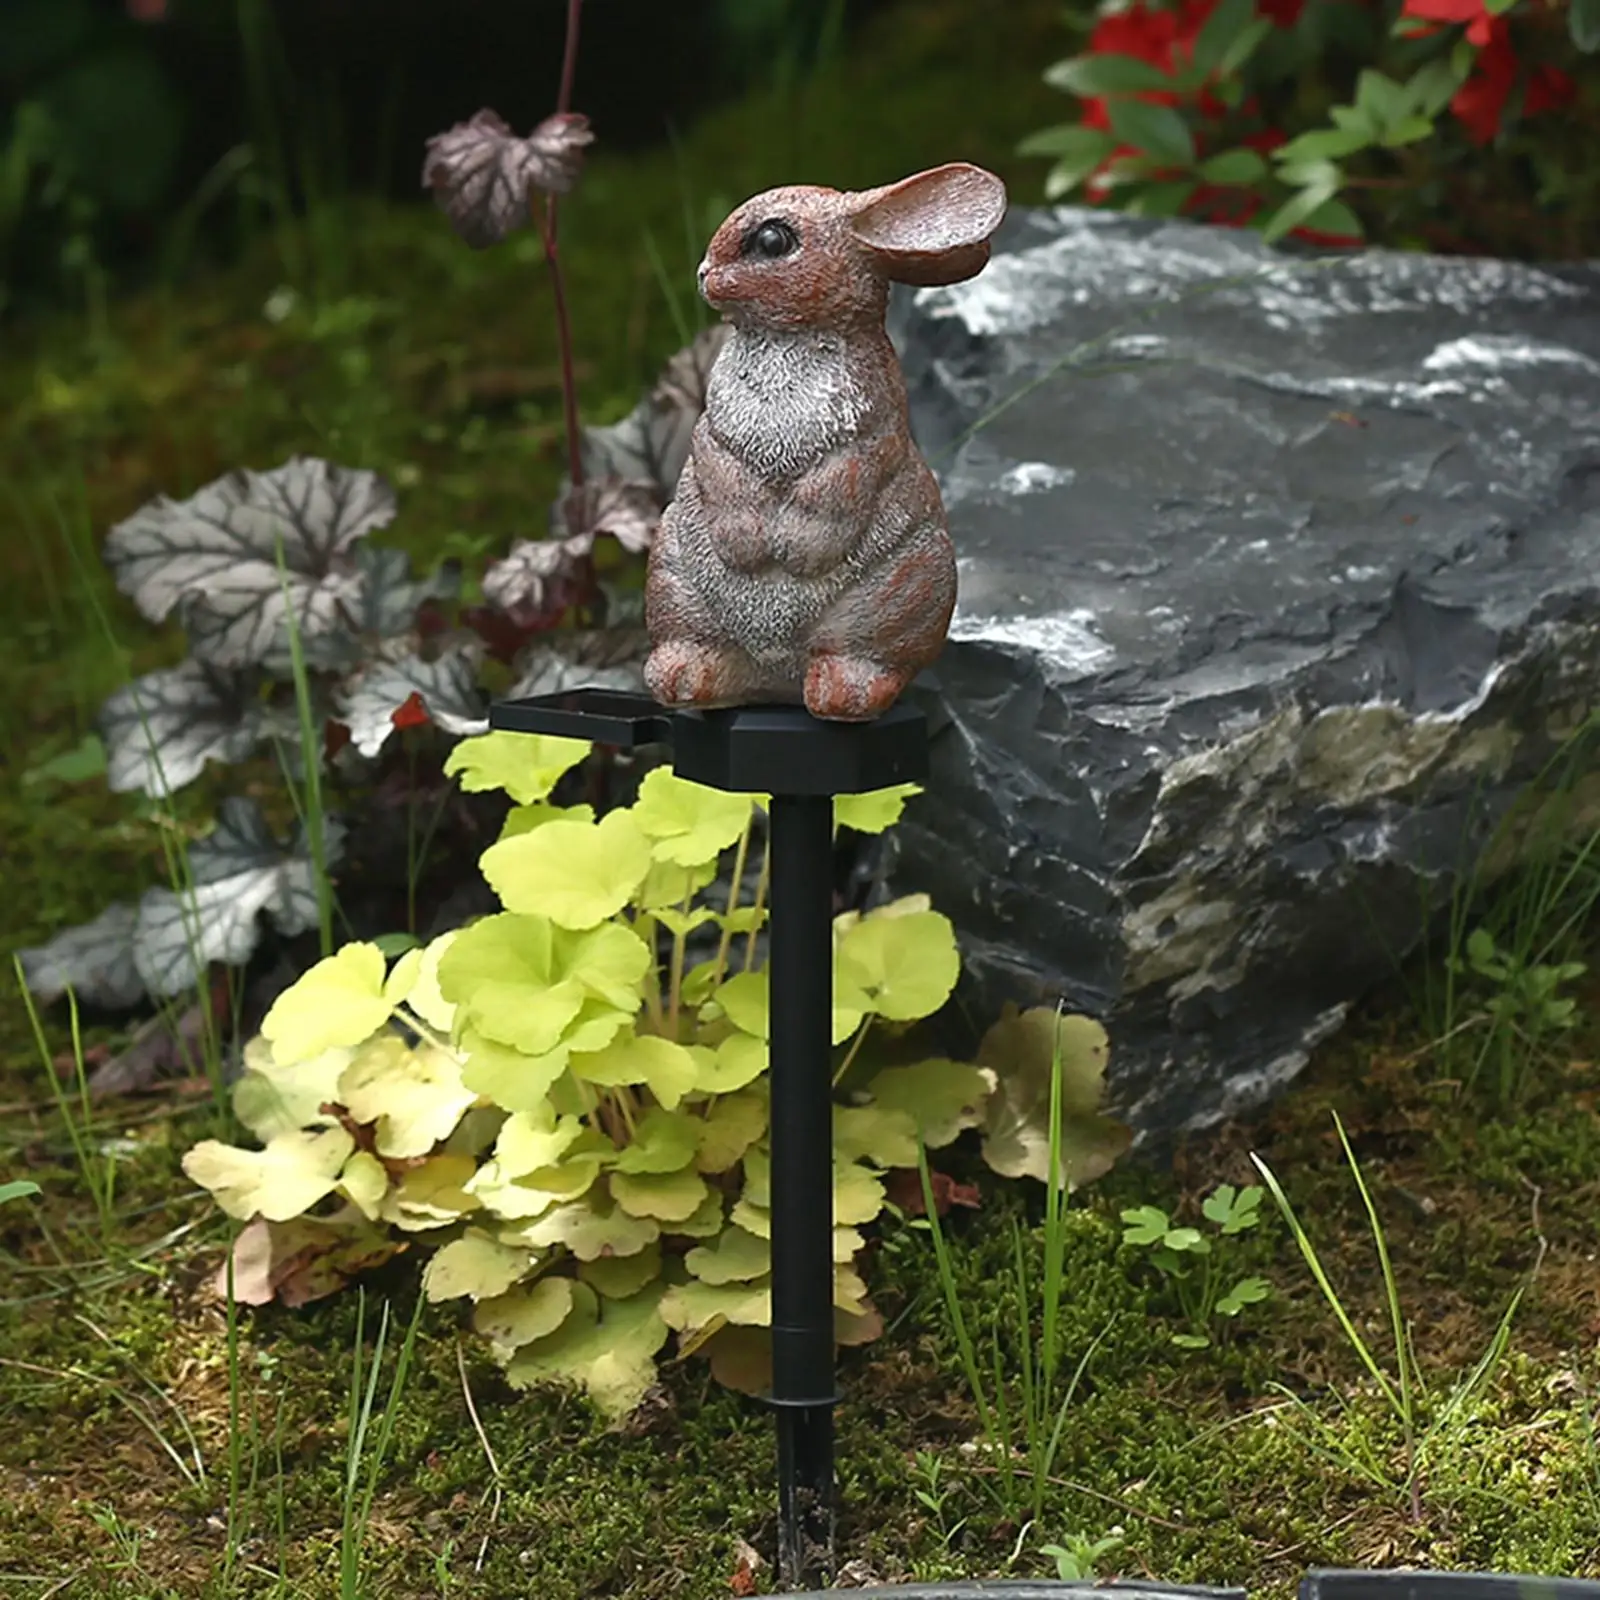 Garden Solar Lights Rabbit Lamp Landscape Light Resin Figure Lights for